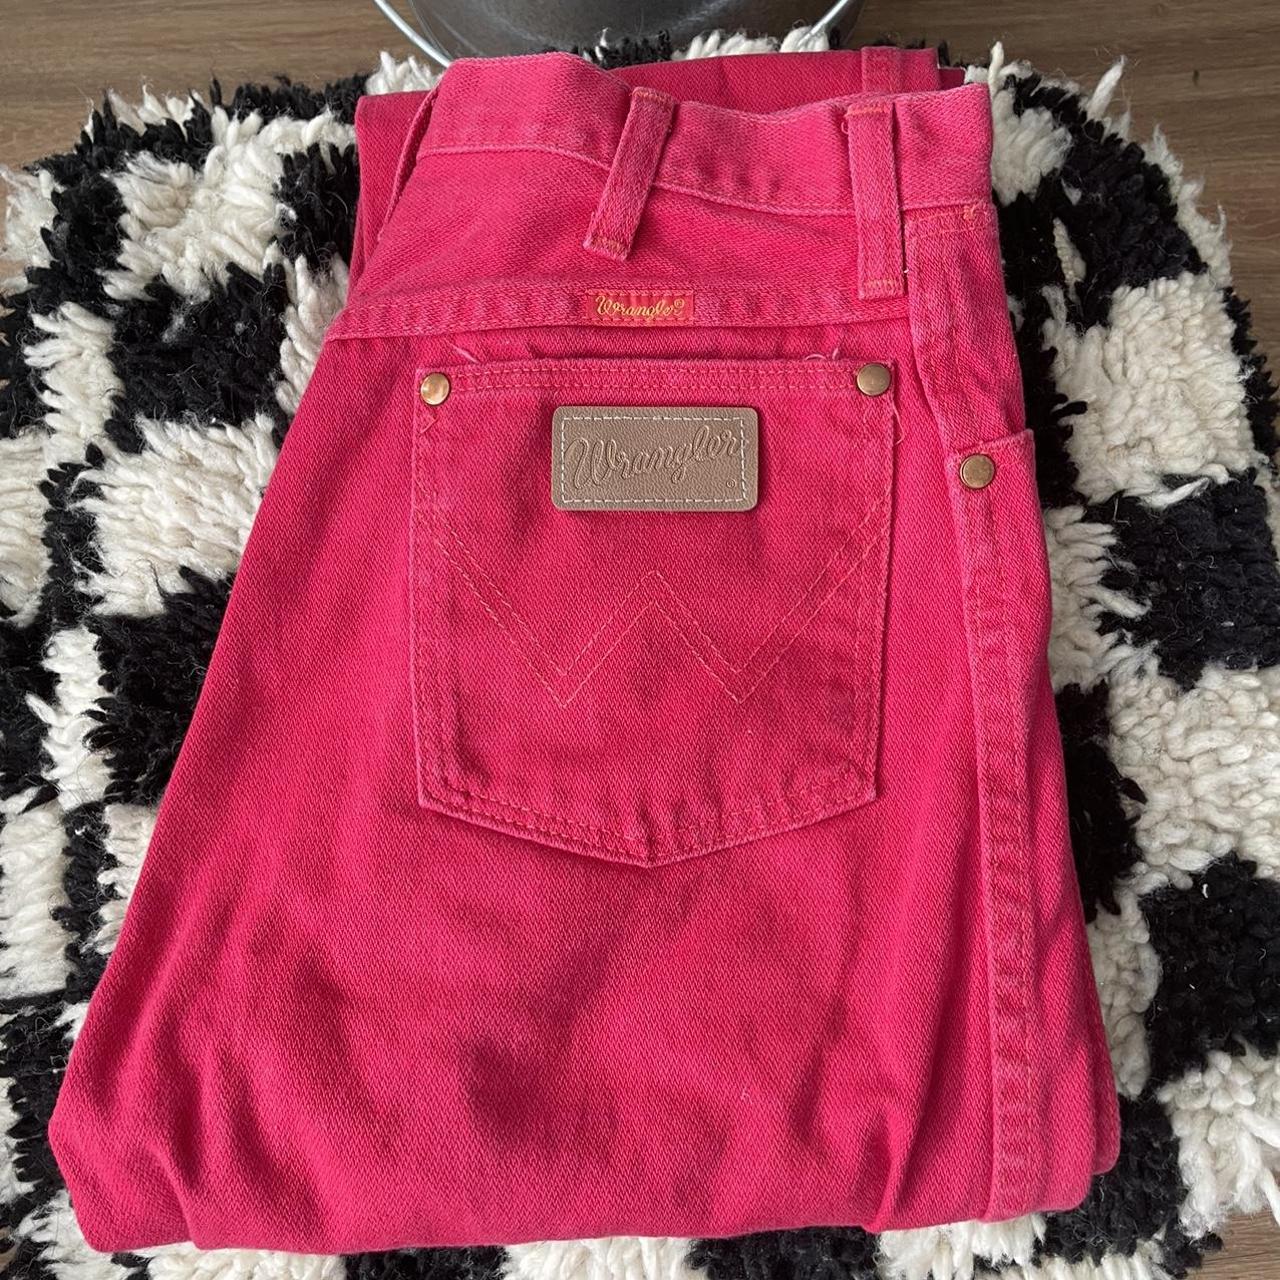 Vintage red Wrangler jeans USA made // great... - Depop